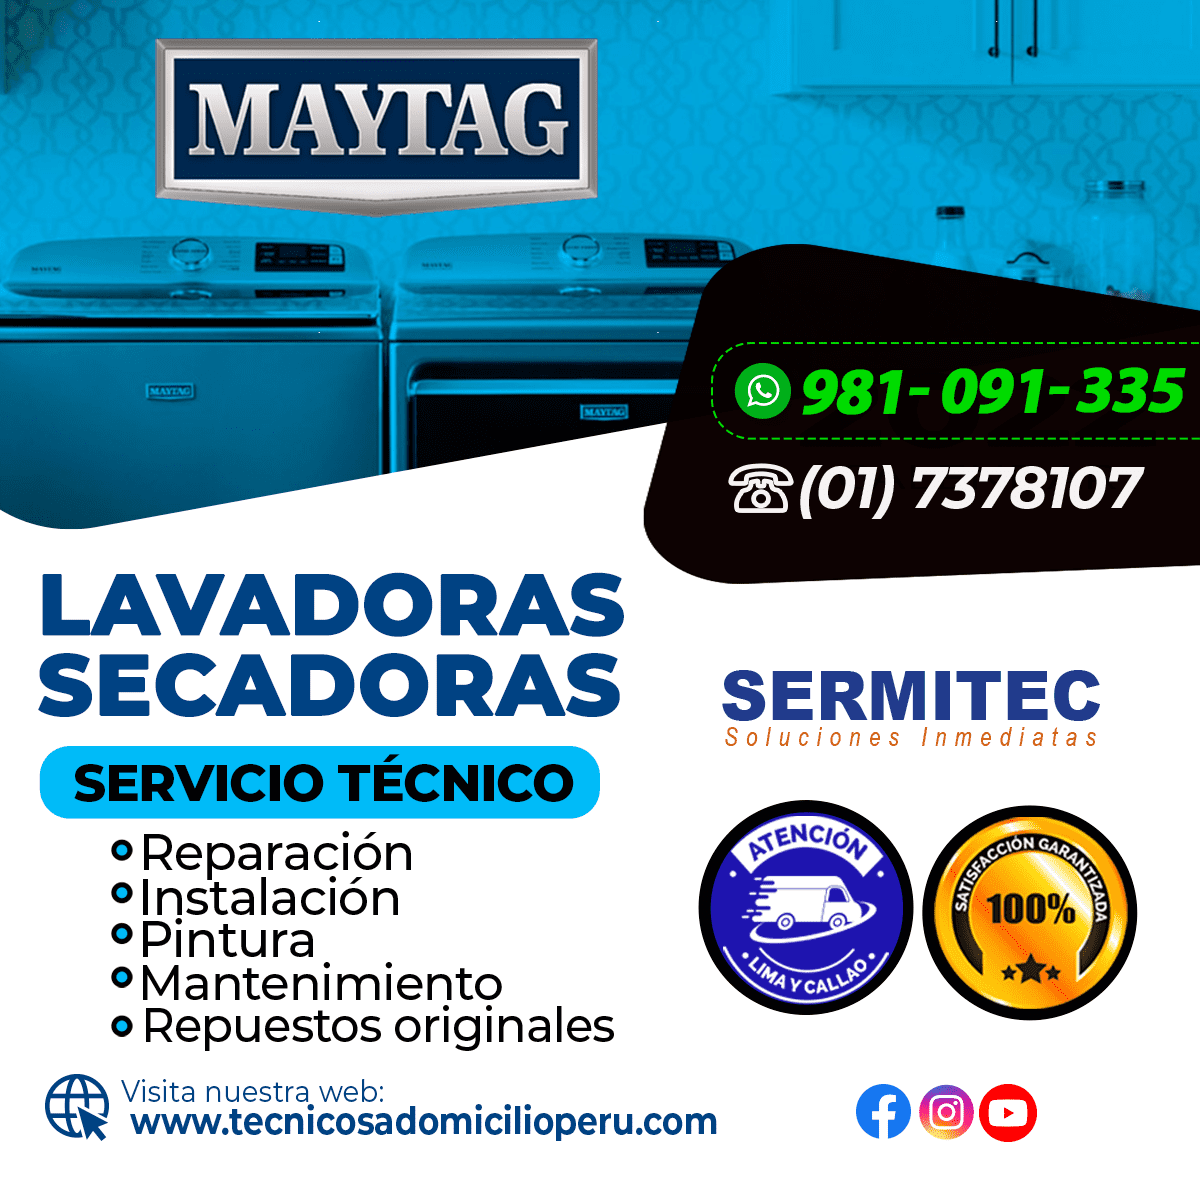 Garantía Mantenimiento lavadoras MAYTAG - 981091335 VILLA EL SALVADOR